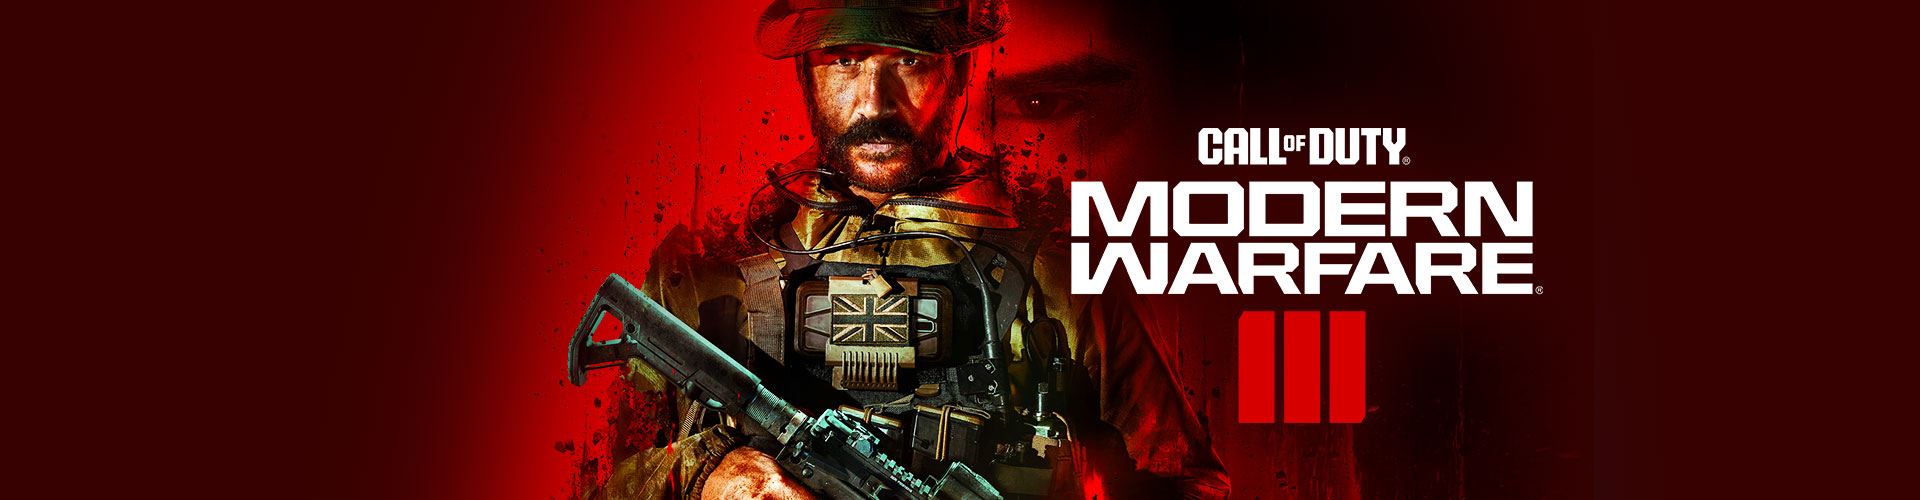 Configuration PC minimale, recommandée et 4K pour jouer à Call of Duty : Modern Warfare III